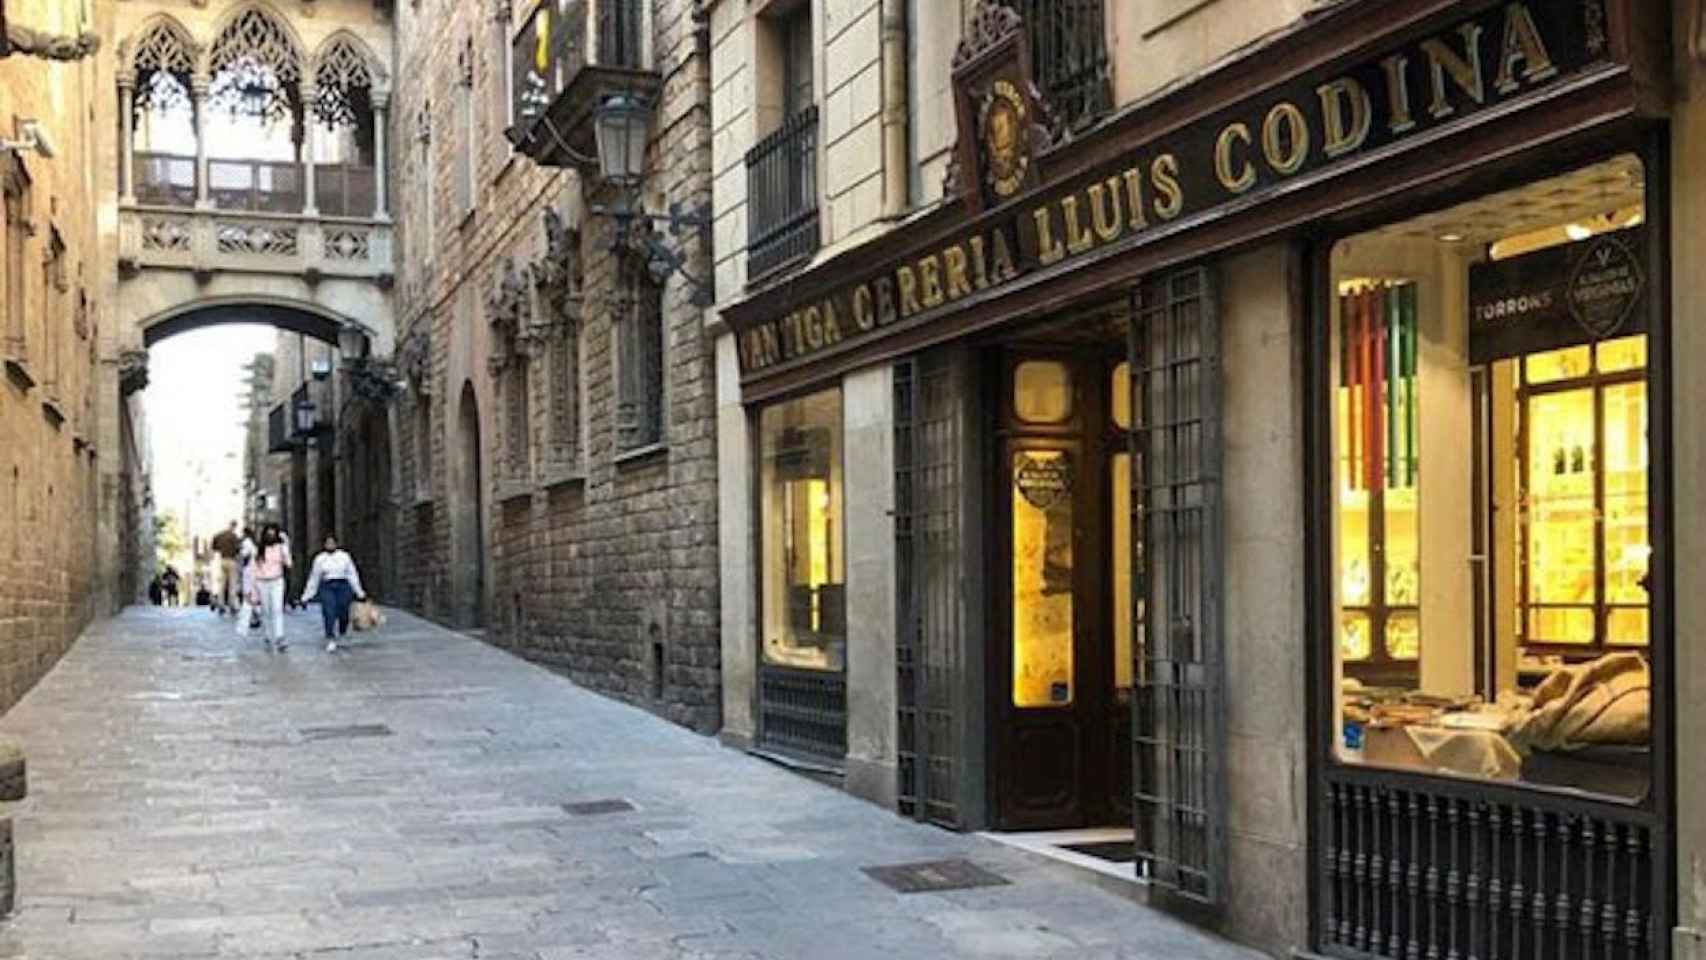 Antiga Cereria Lluís Codina, local emblemático de Barcelona que acogerá la nueva tienda de turrones Virginias / CEDIDA